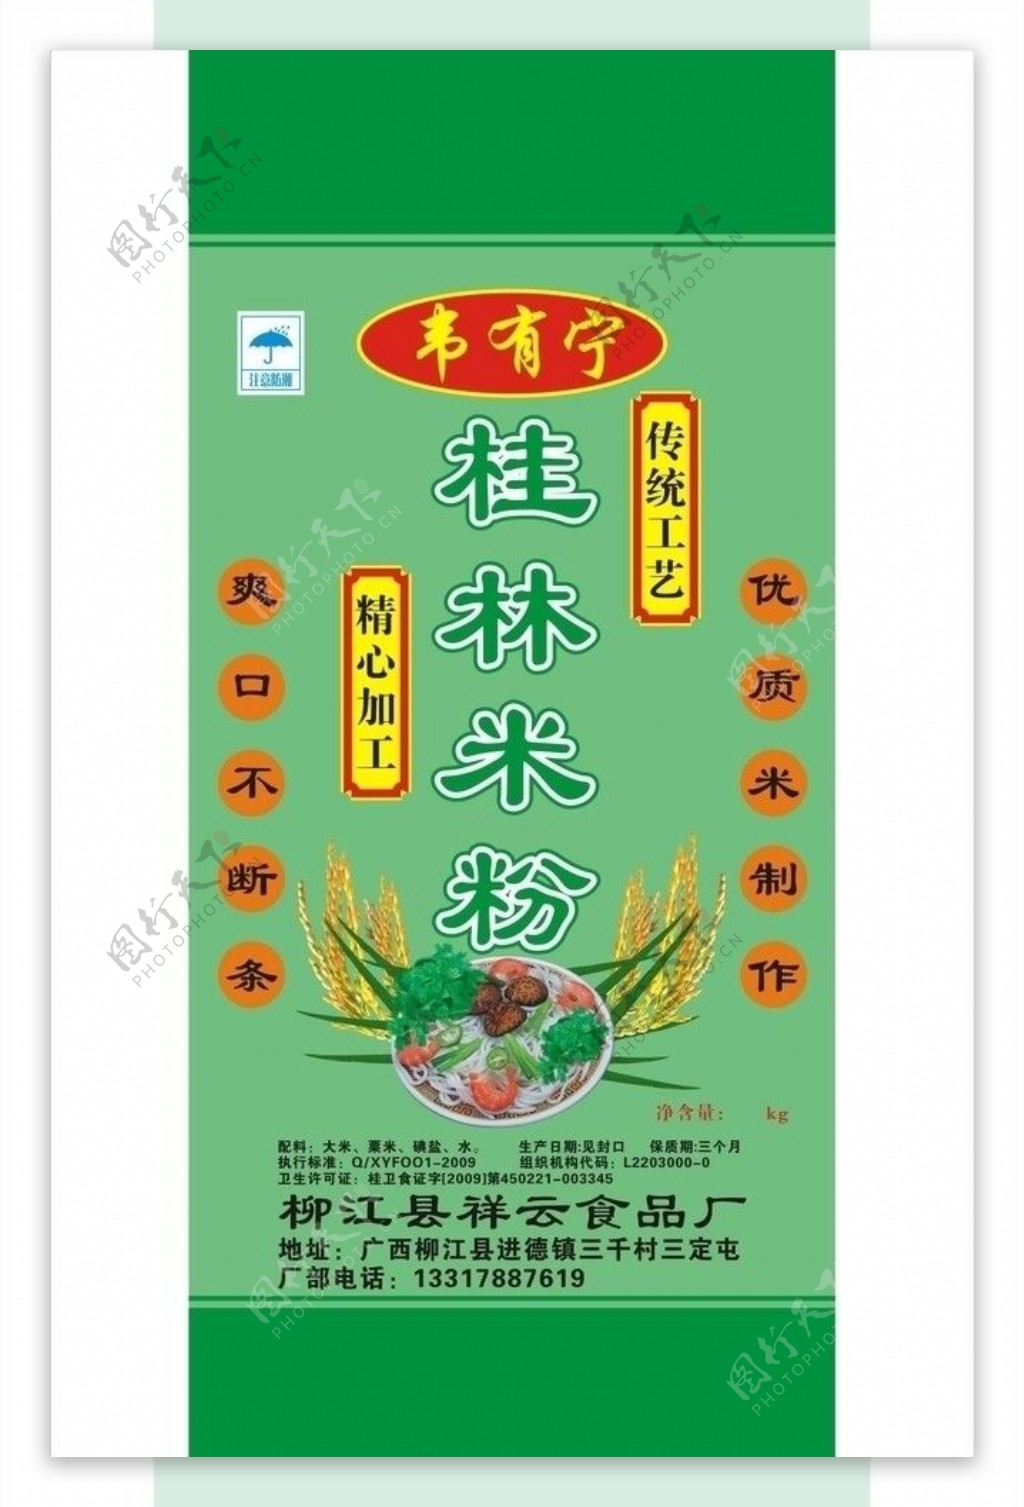 桂林米粉图片